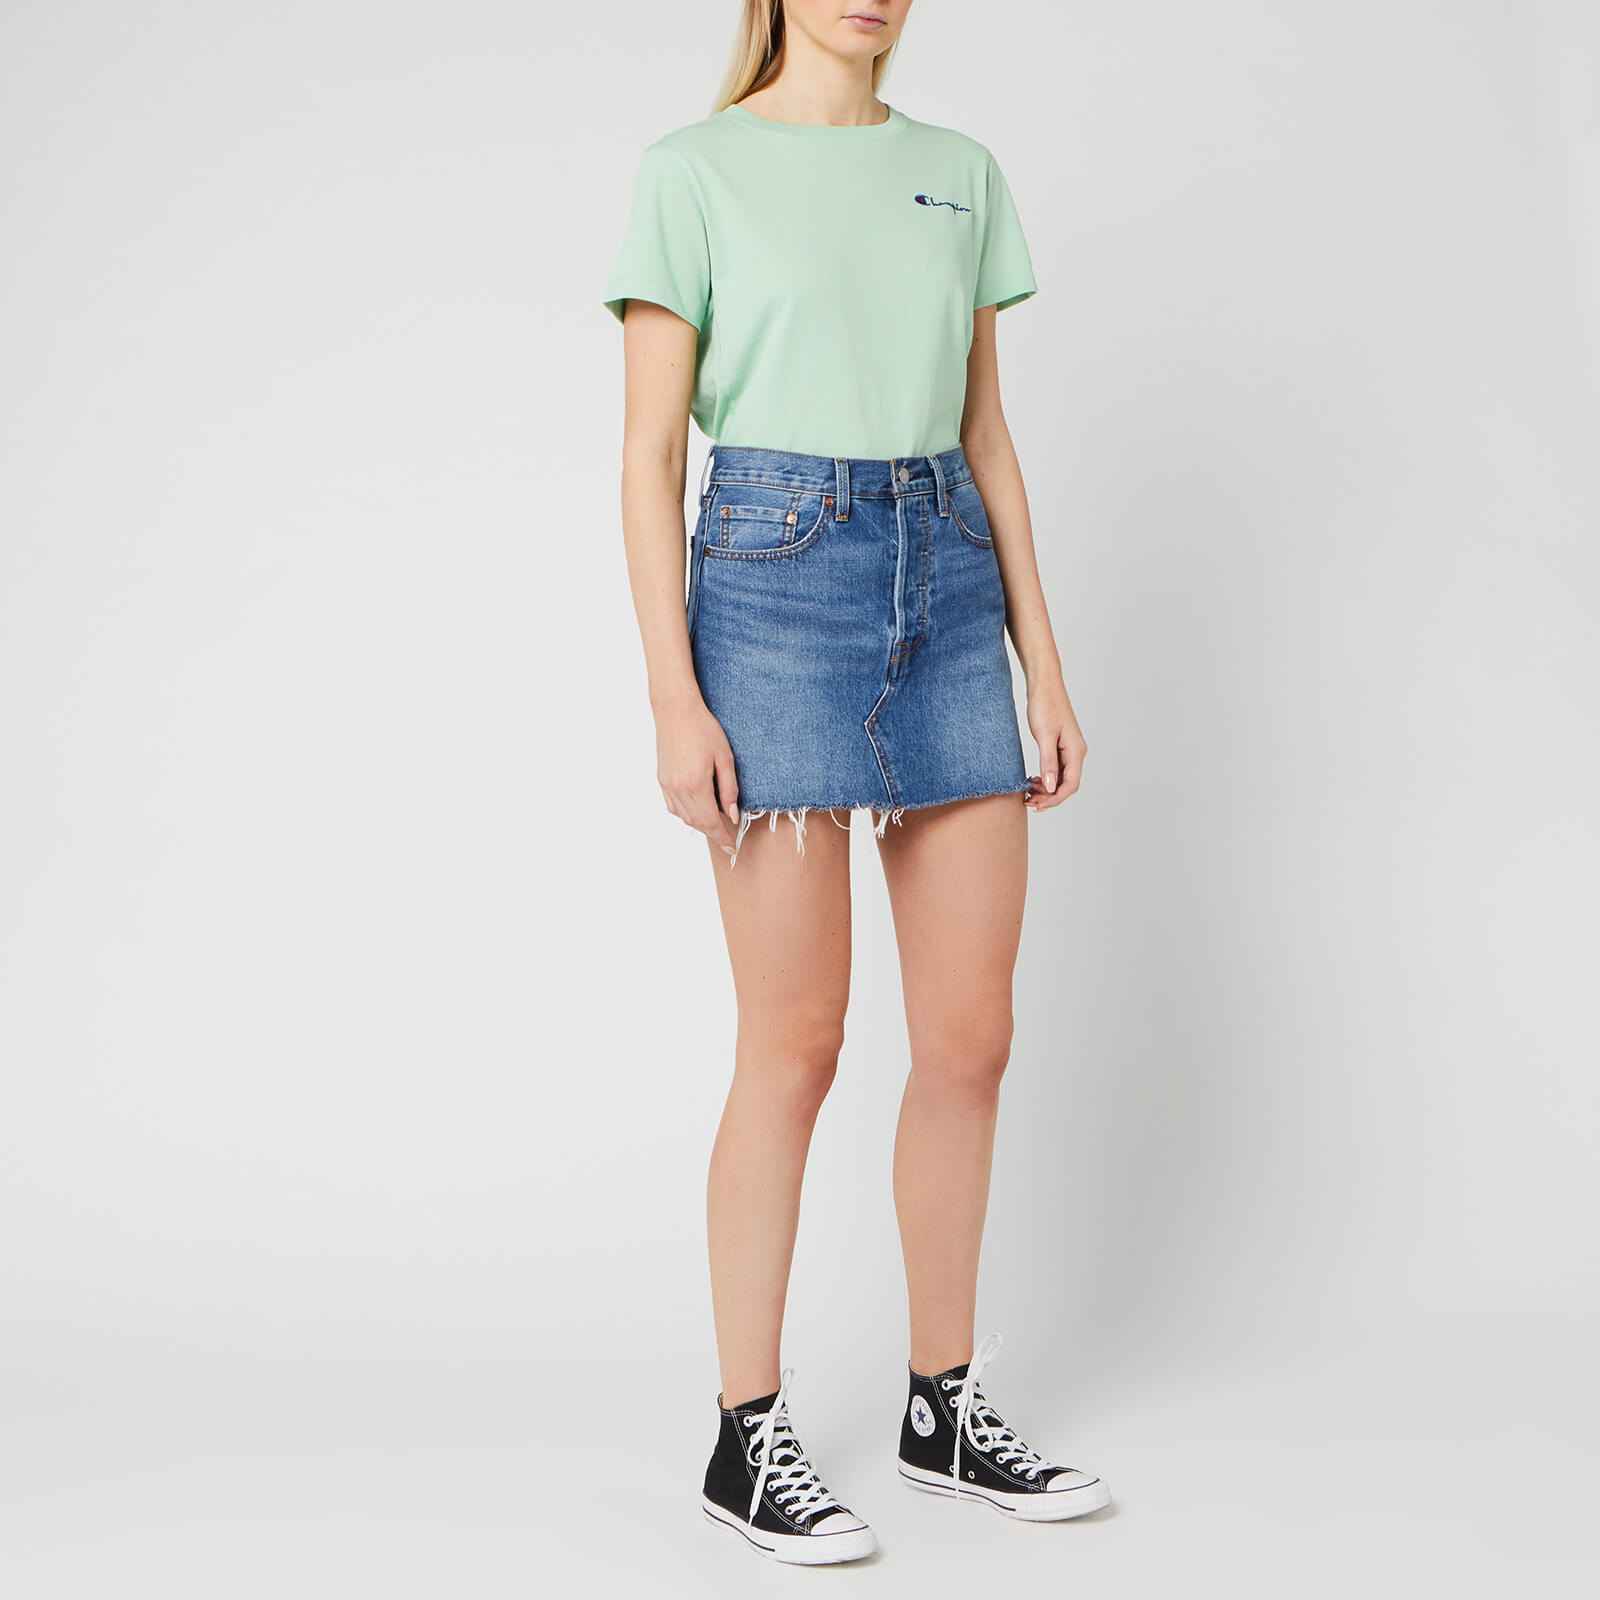 Champion Women's Small Script T-Shirt - Mint Green - Xs